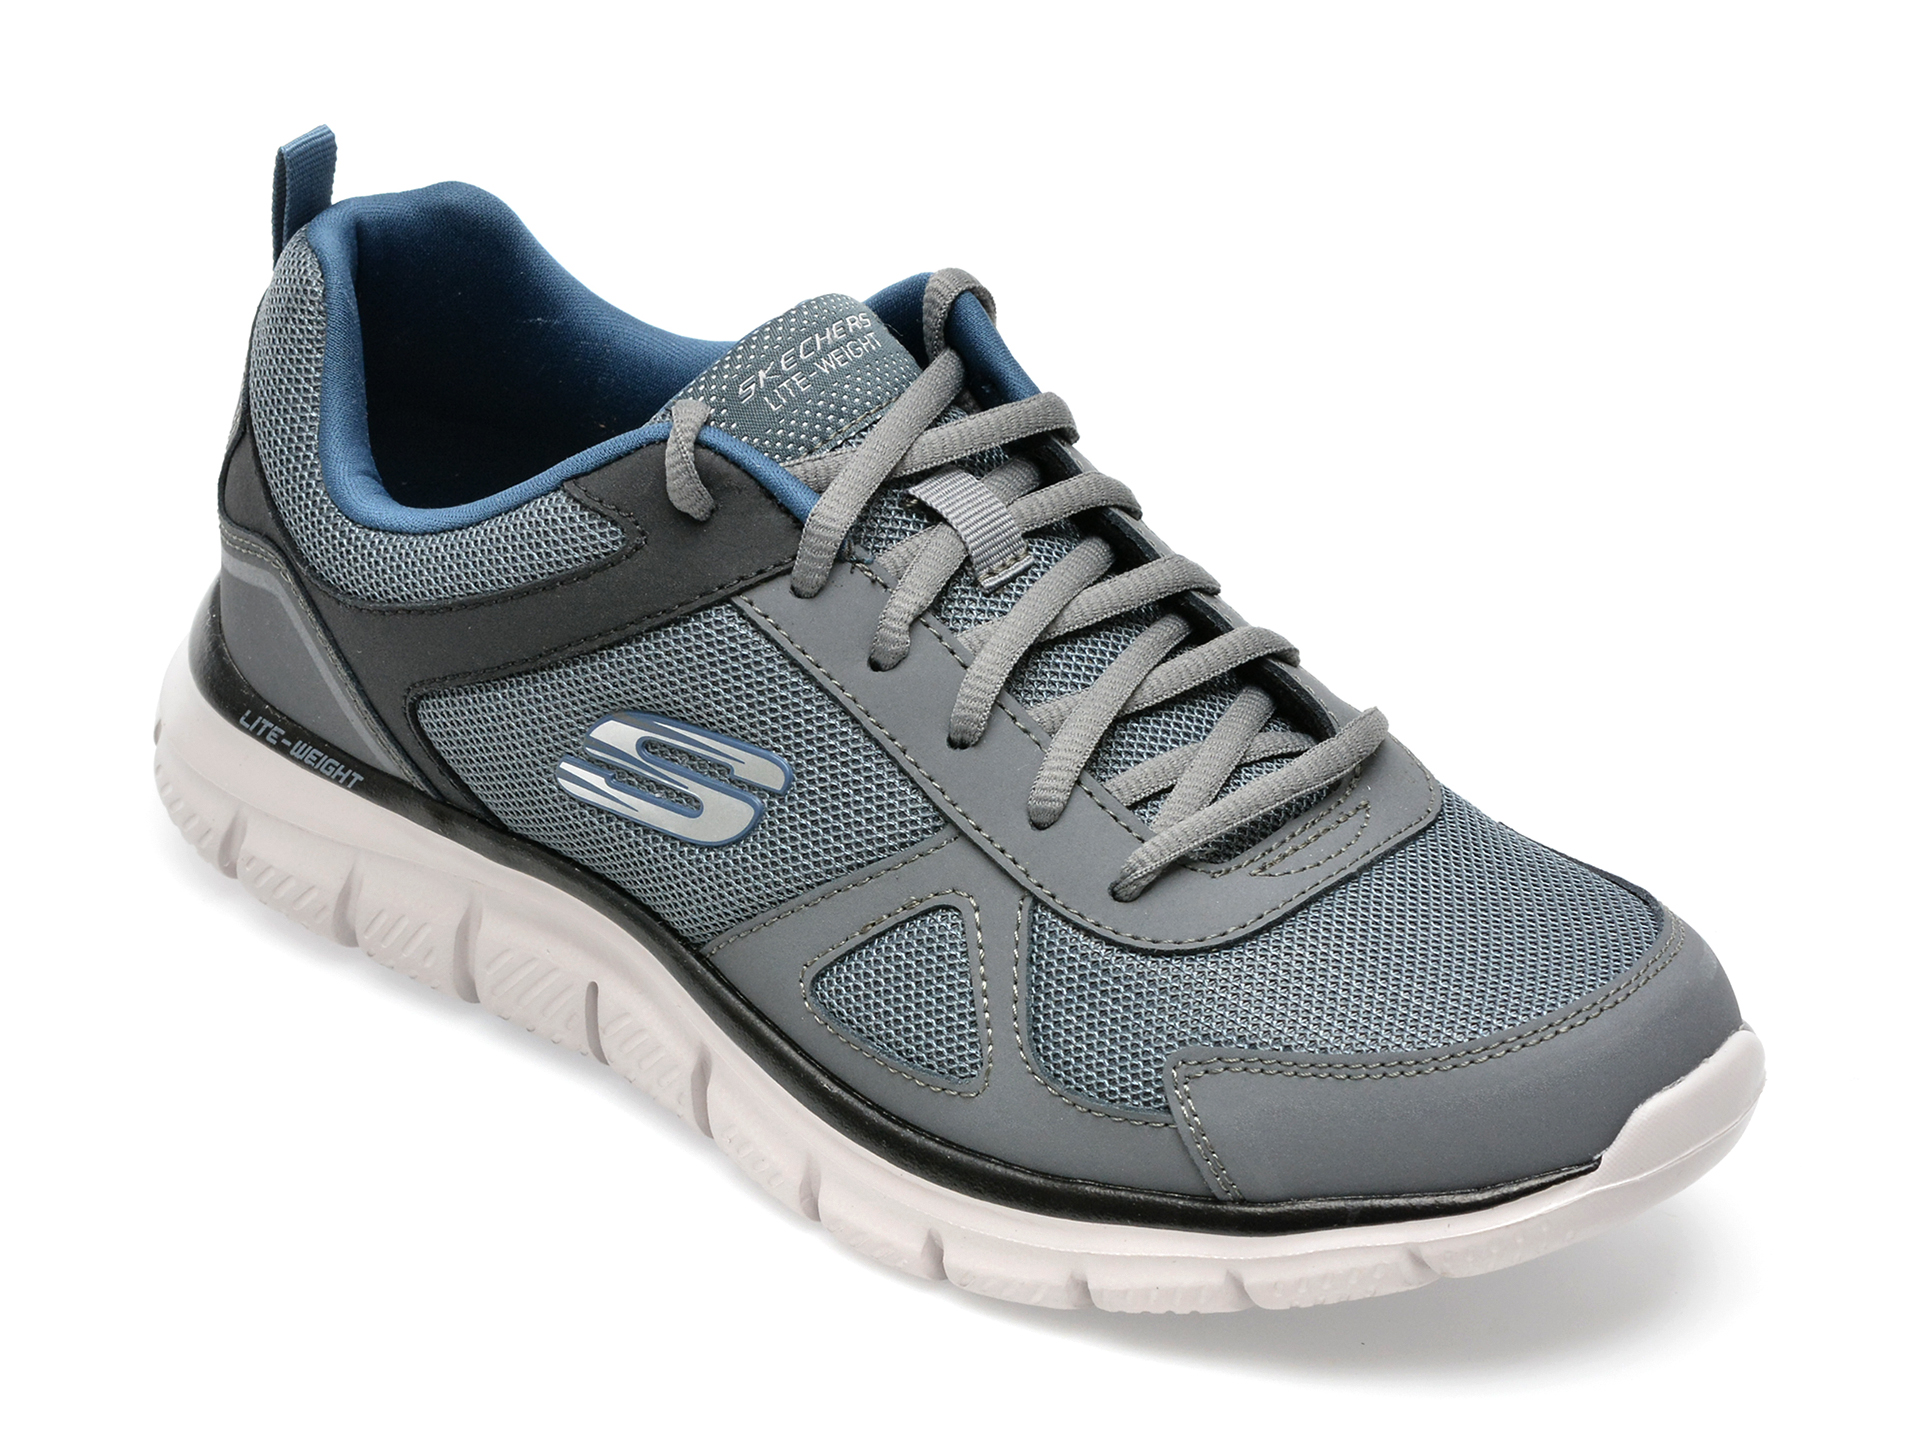 Pantofi sport SKECHERS gri, TRACK, din material textil barbati 2023-09-21